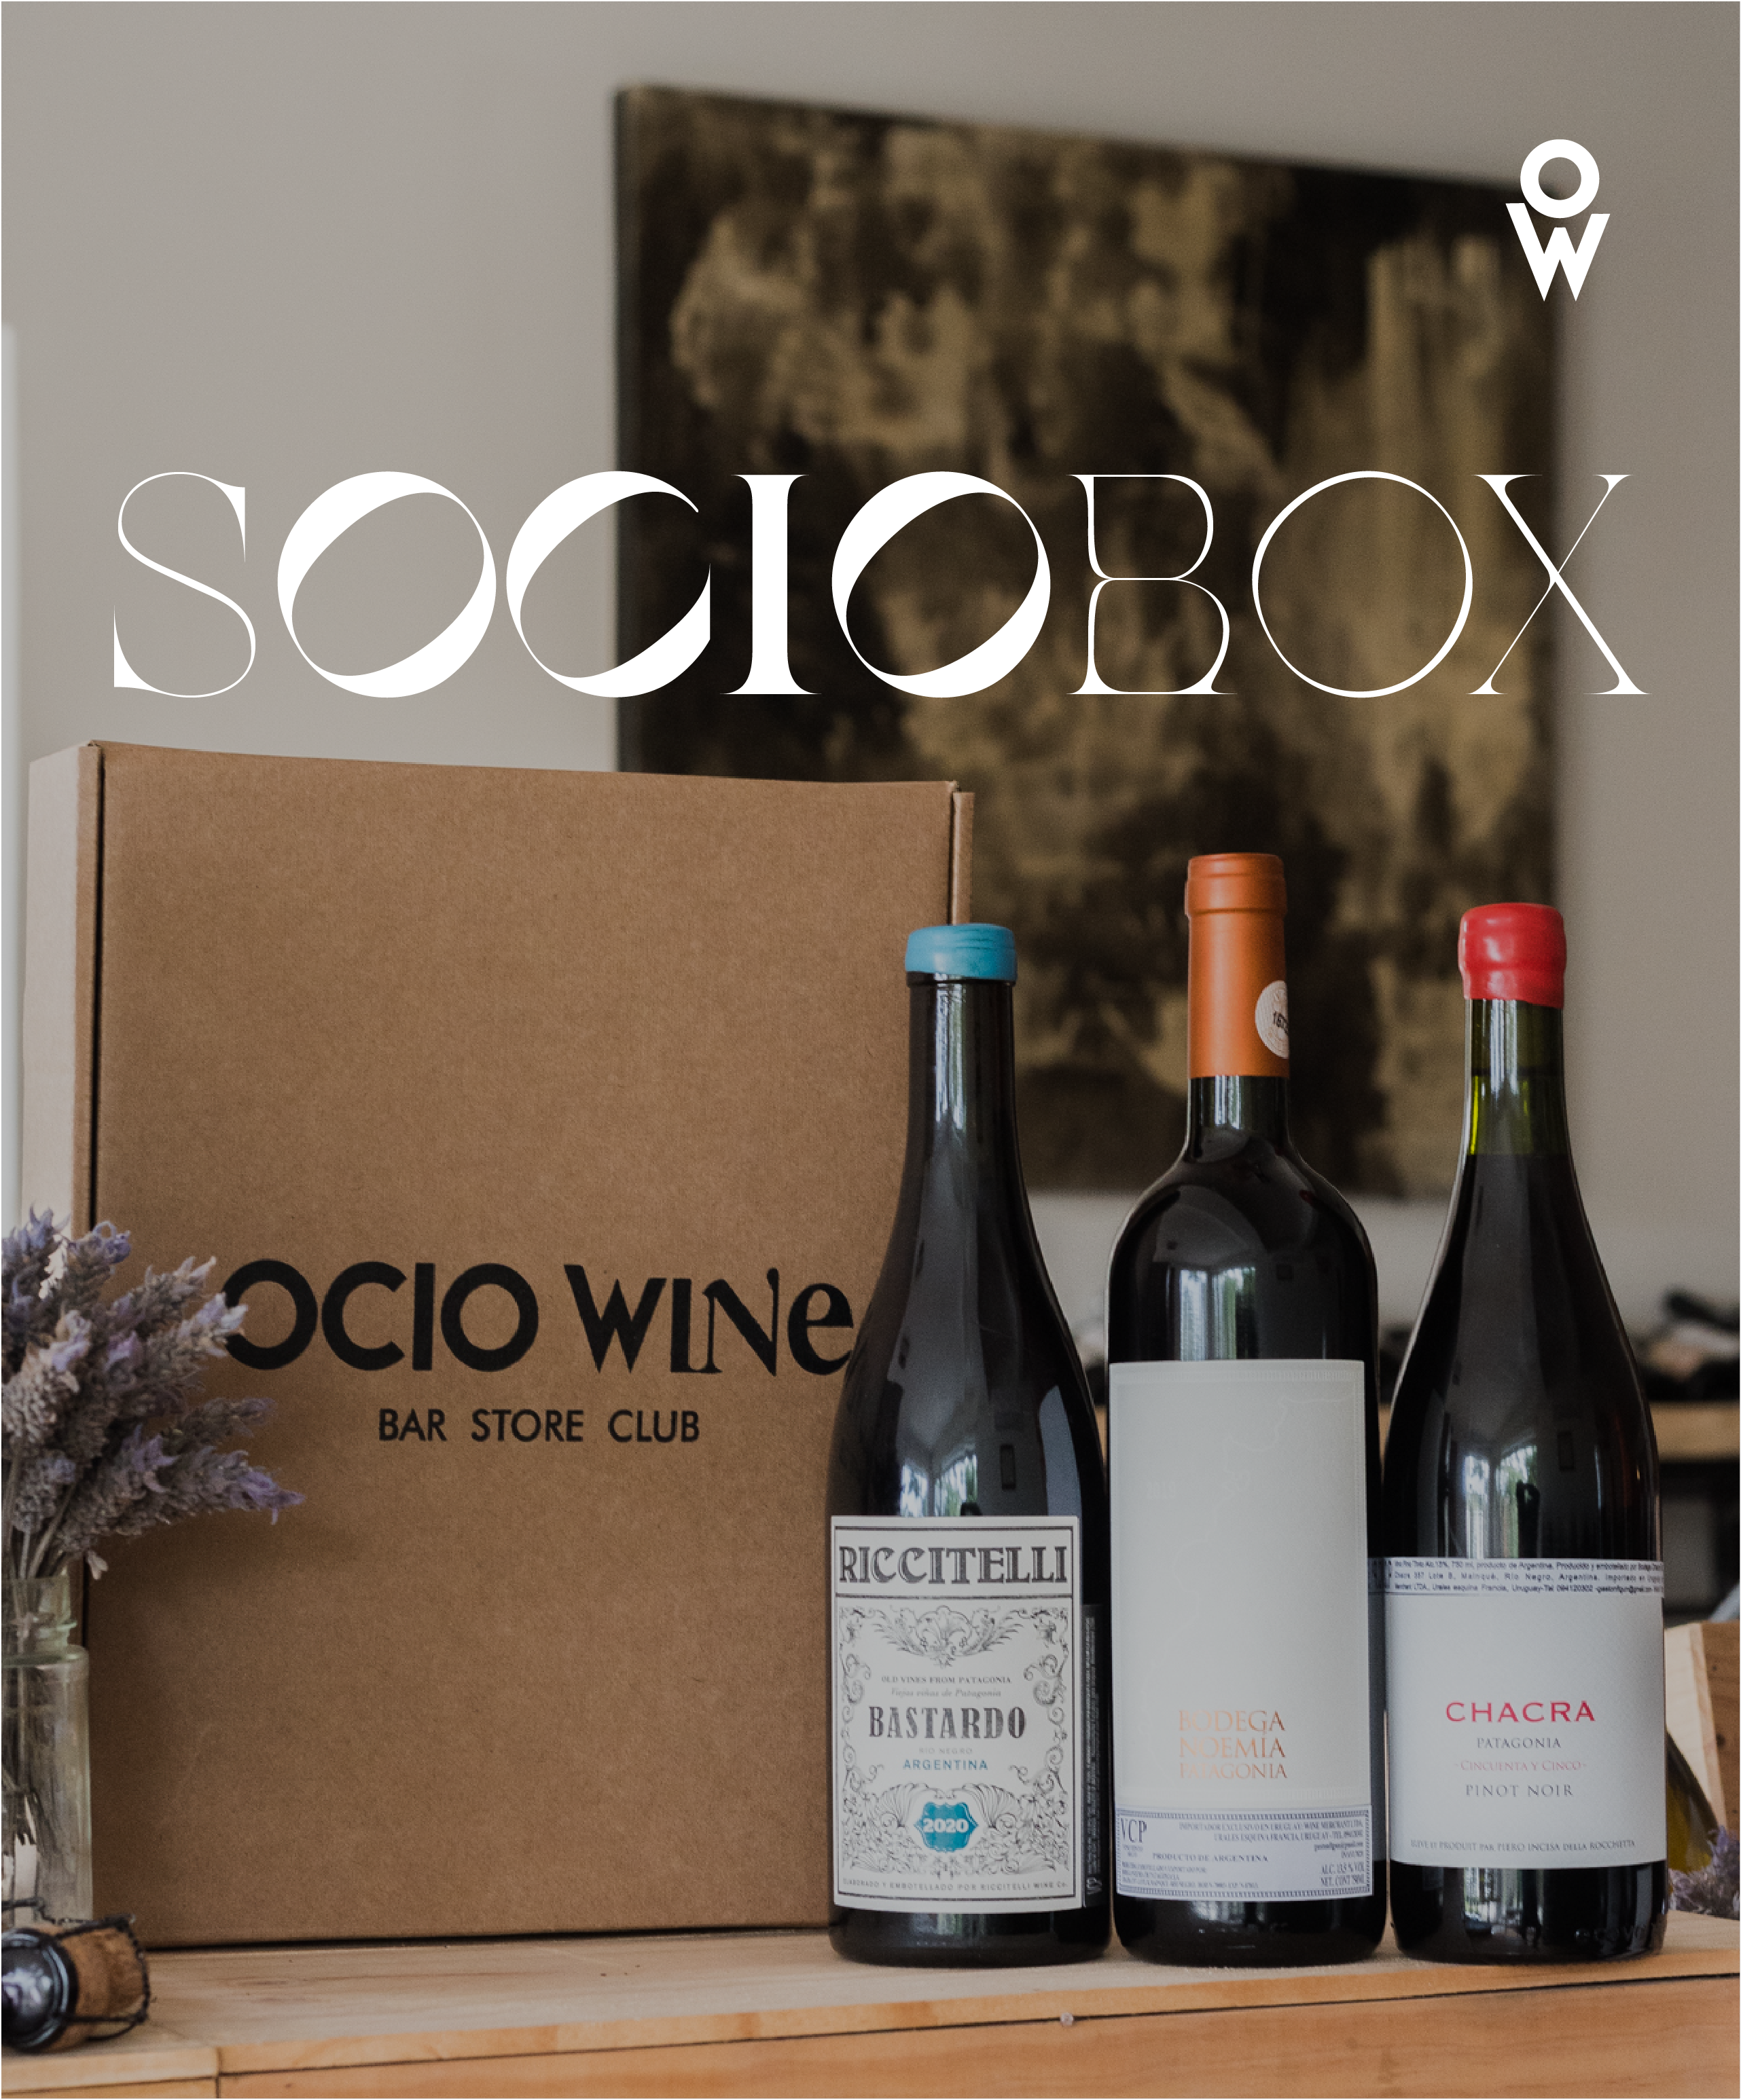 SocioBox